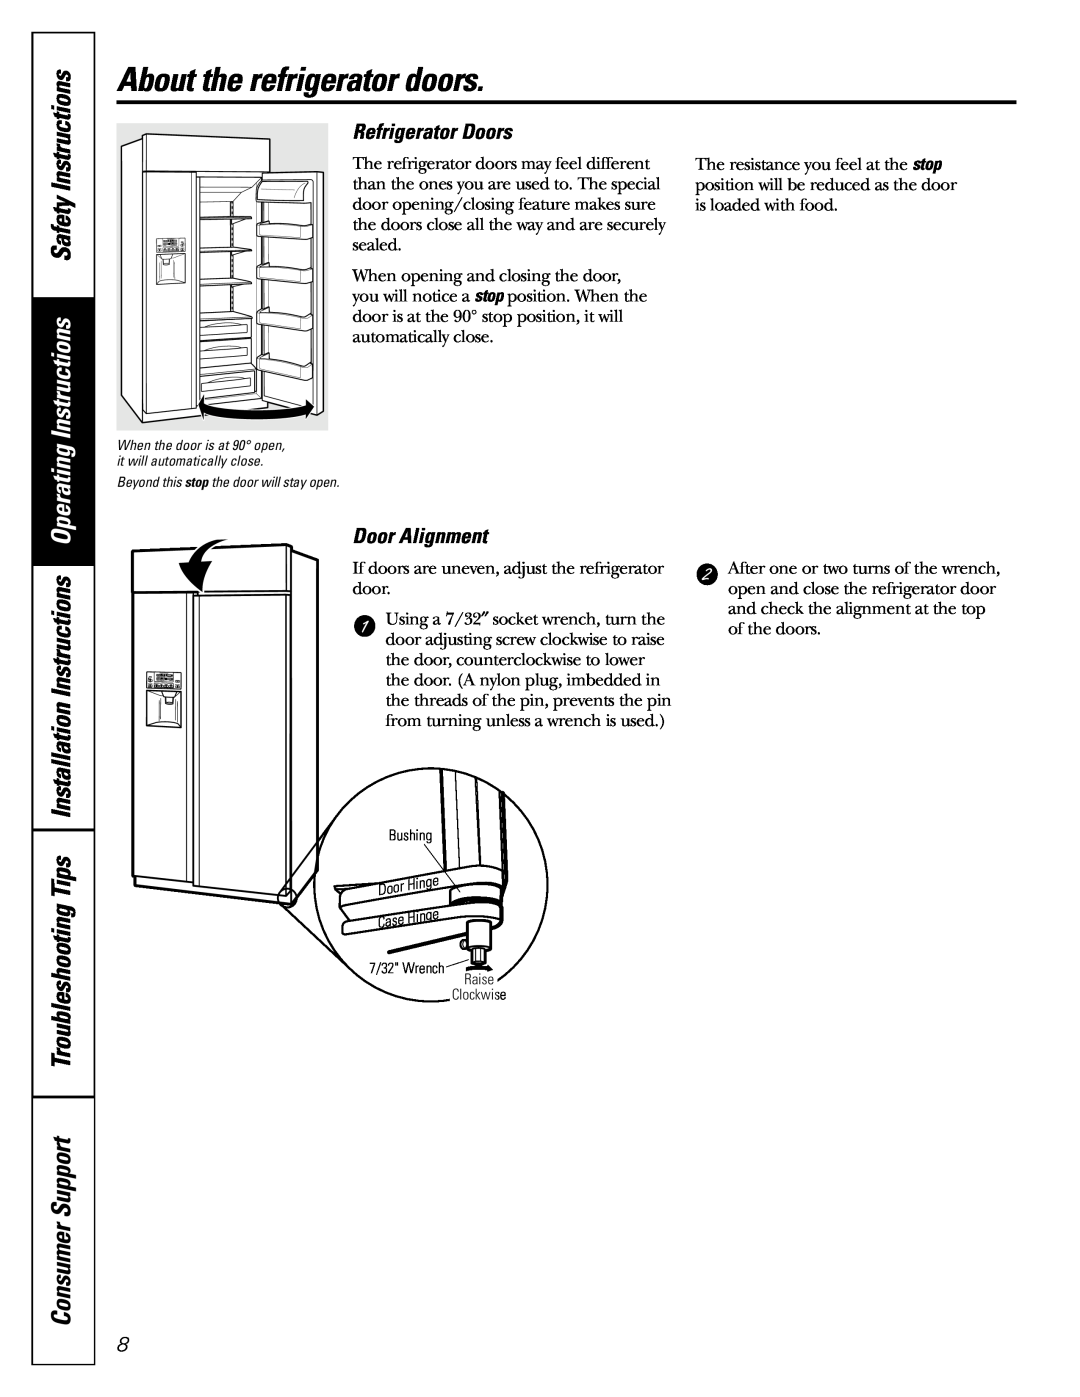 GE 42, 48 owner manual About the refrigerator doors, Refrigerator Doors, Door Alignment 